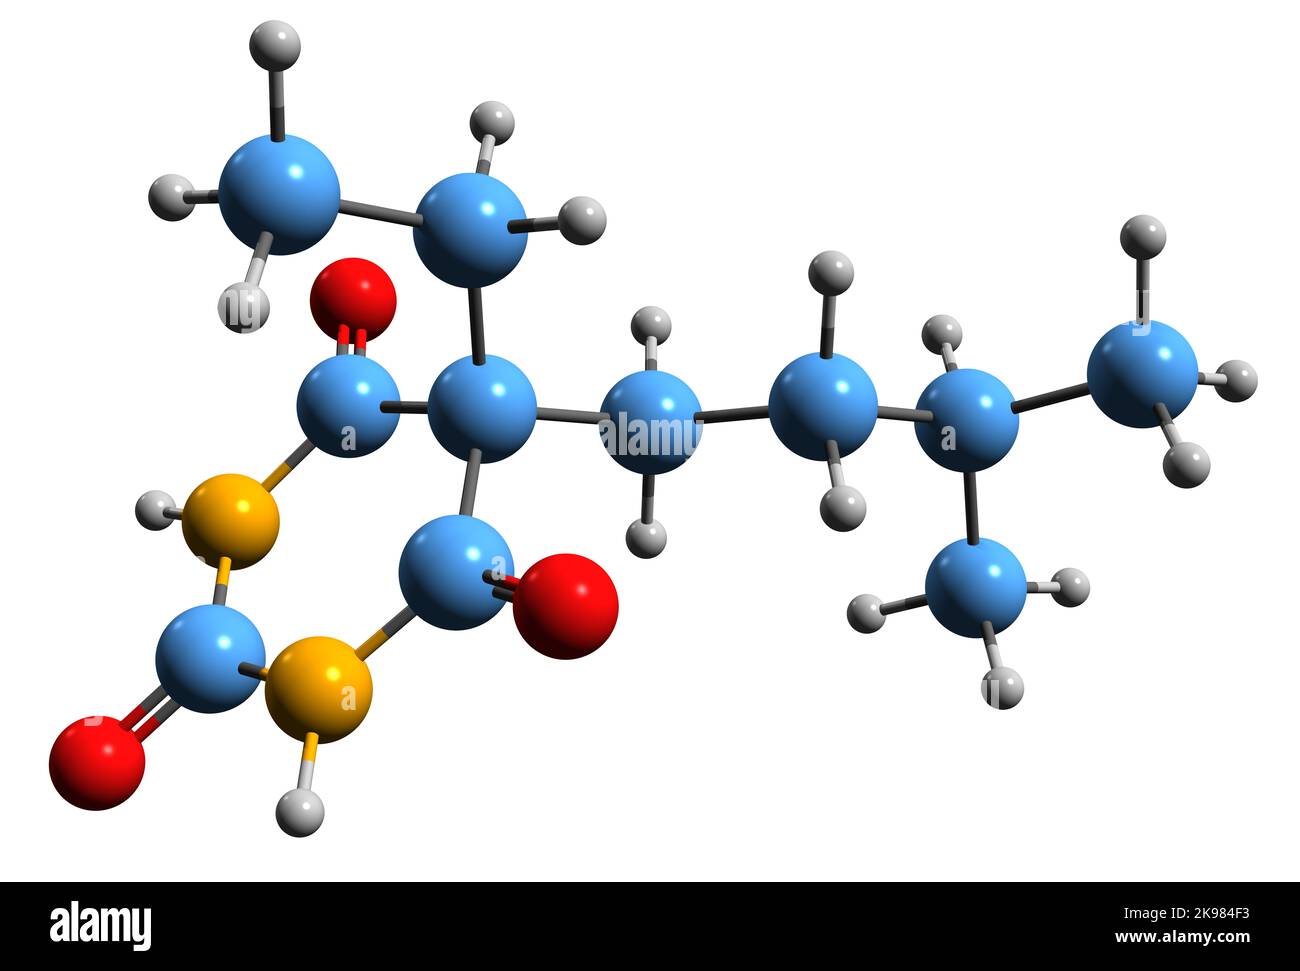 3D Bild der Skelettformel von Amobarbital - molekulare chemische Struktur von Barbiturat-Derivaten, isoliert auf weißem Hintergrund Stockfoto